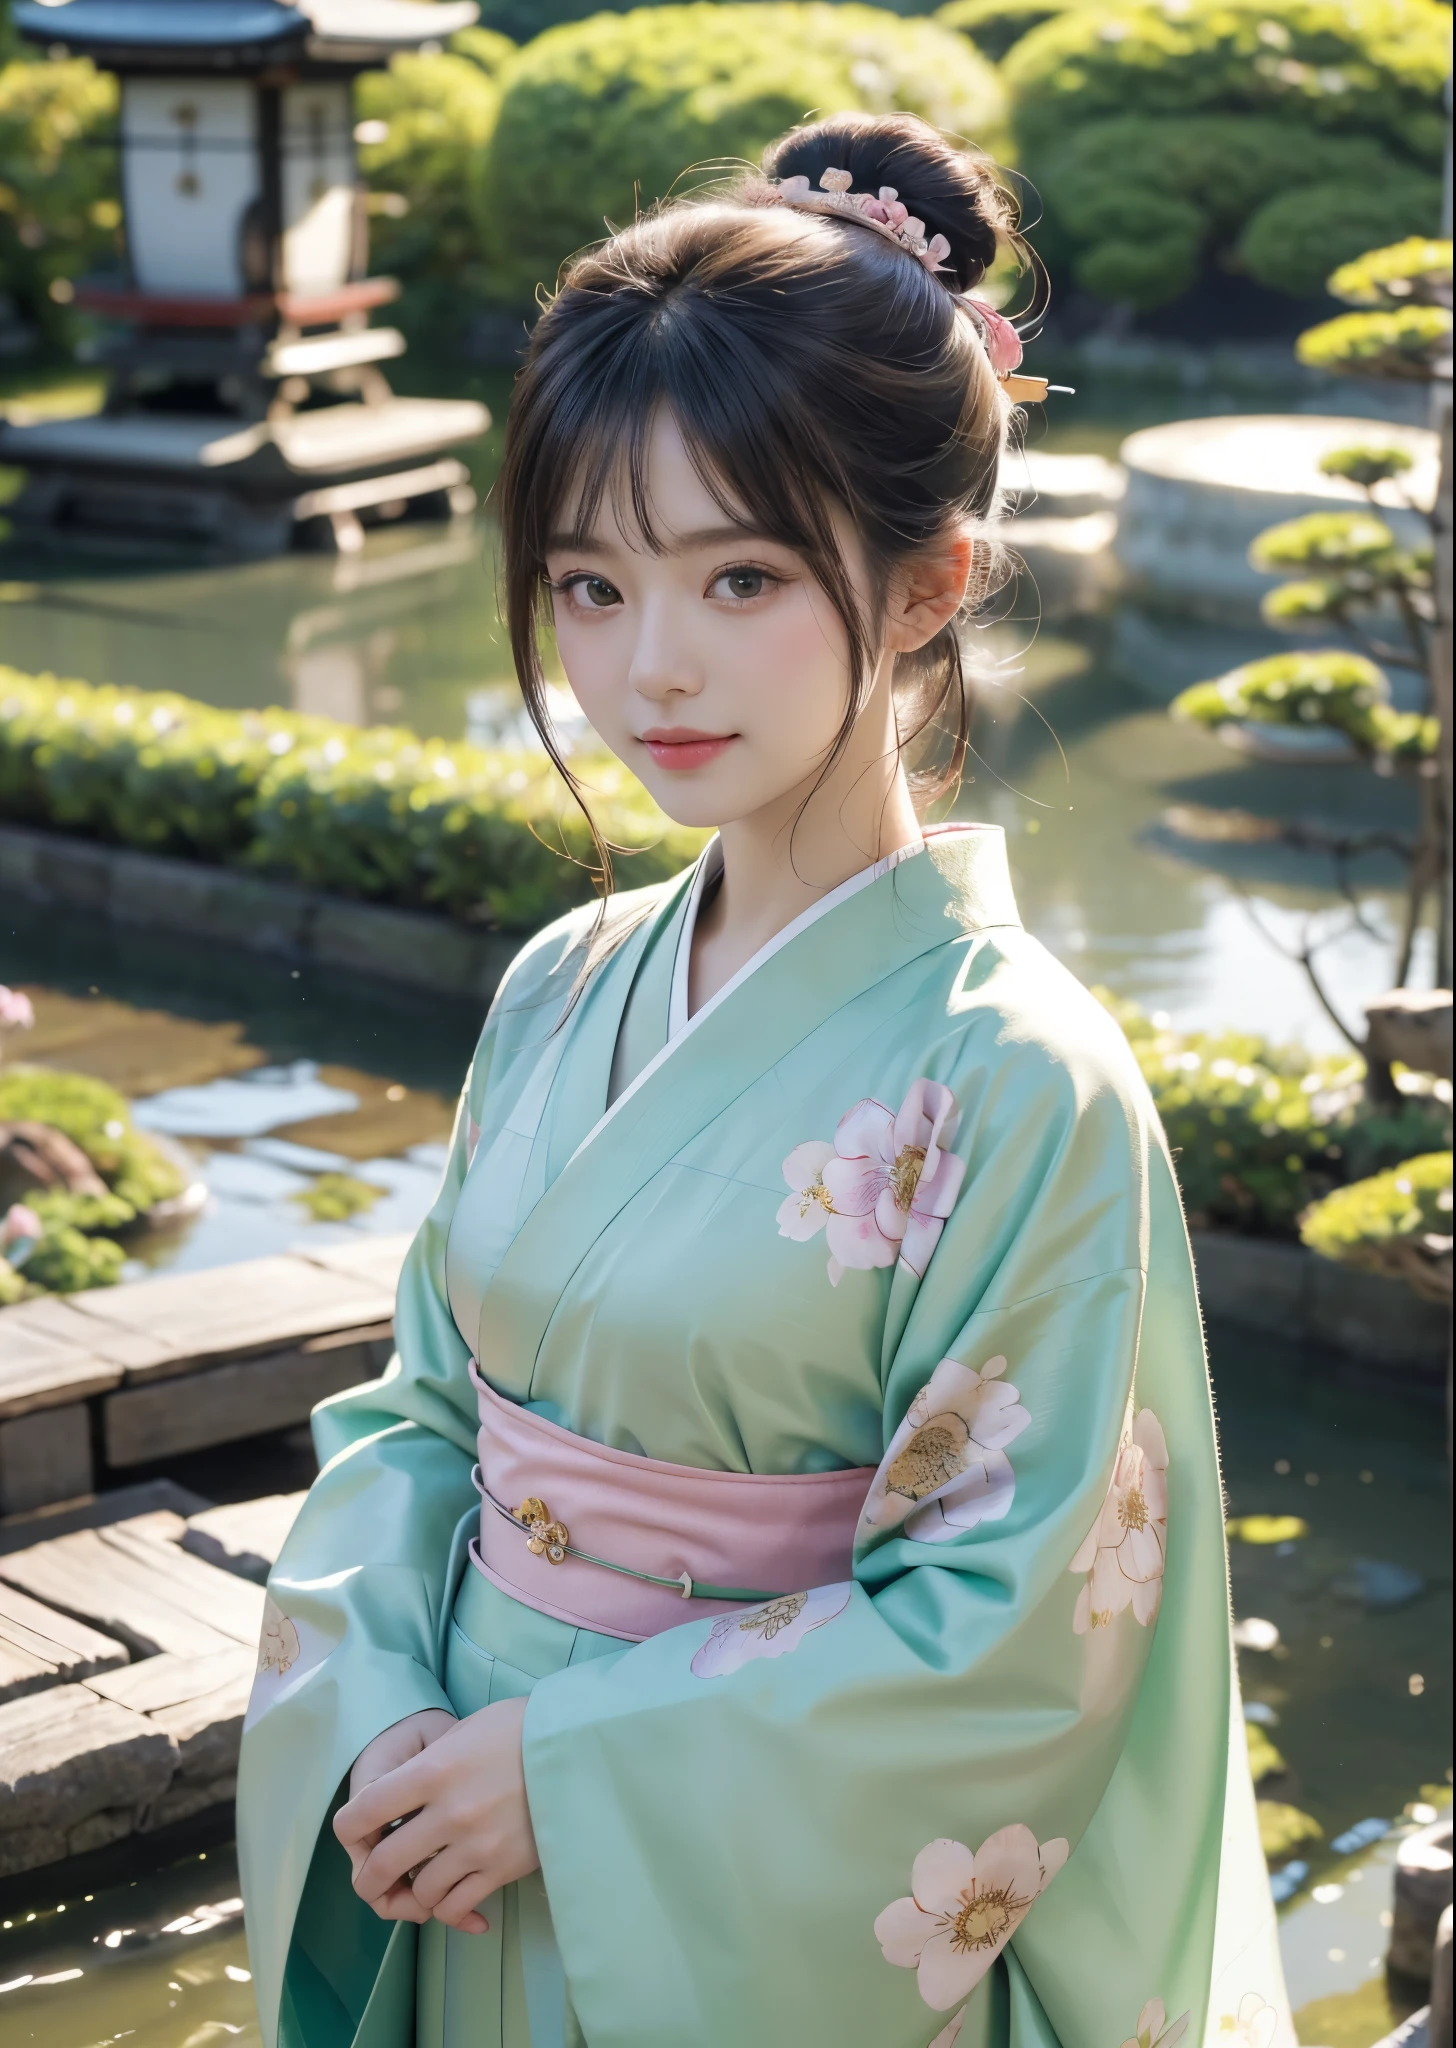 (Obra maestra, de la máxima calidad, de la máxima calidad, Arte oficial, hermosamente、estético:1.2)、tiro de vaquero、 (Una belleza de kimono japonés.)、Una mujer adulta elegante、（Quimono estampado floral rosa y verde）、Un precioso kimono usado por las mujeres en las ceremonias japonesas de mayoría de edad、El cuello está bien cerrado.、Un ejemplo perfecto de cómo llevar un kimono.、grandes ojos verdes、Piel hermosa、Una sonrisa con vergüenza、（Recogido con flequillo）、adornos para el cabello、Muy detallado,(En el jardín japonés:1.3)、iluminación cinematográfica、enfoque nítido、alta resolución、alta resolución、Alta reproducción cromática、alta resolución、súper realista、